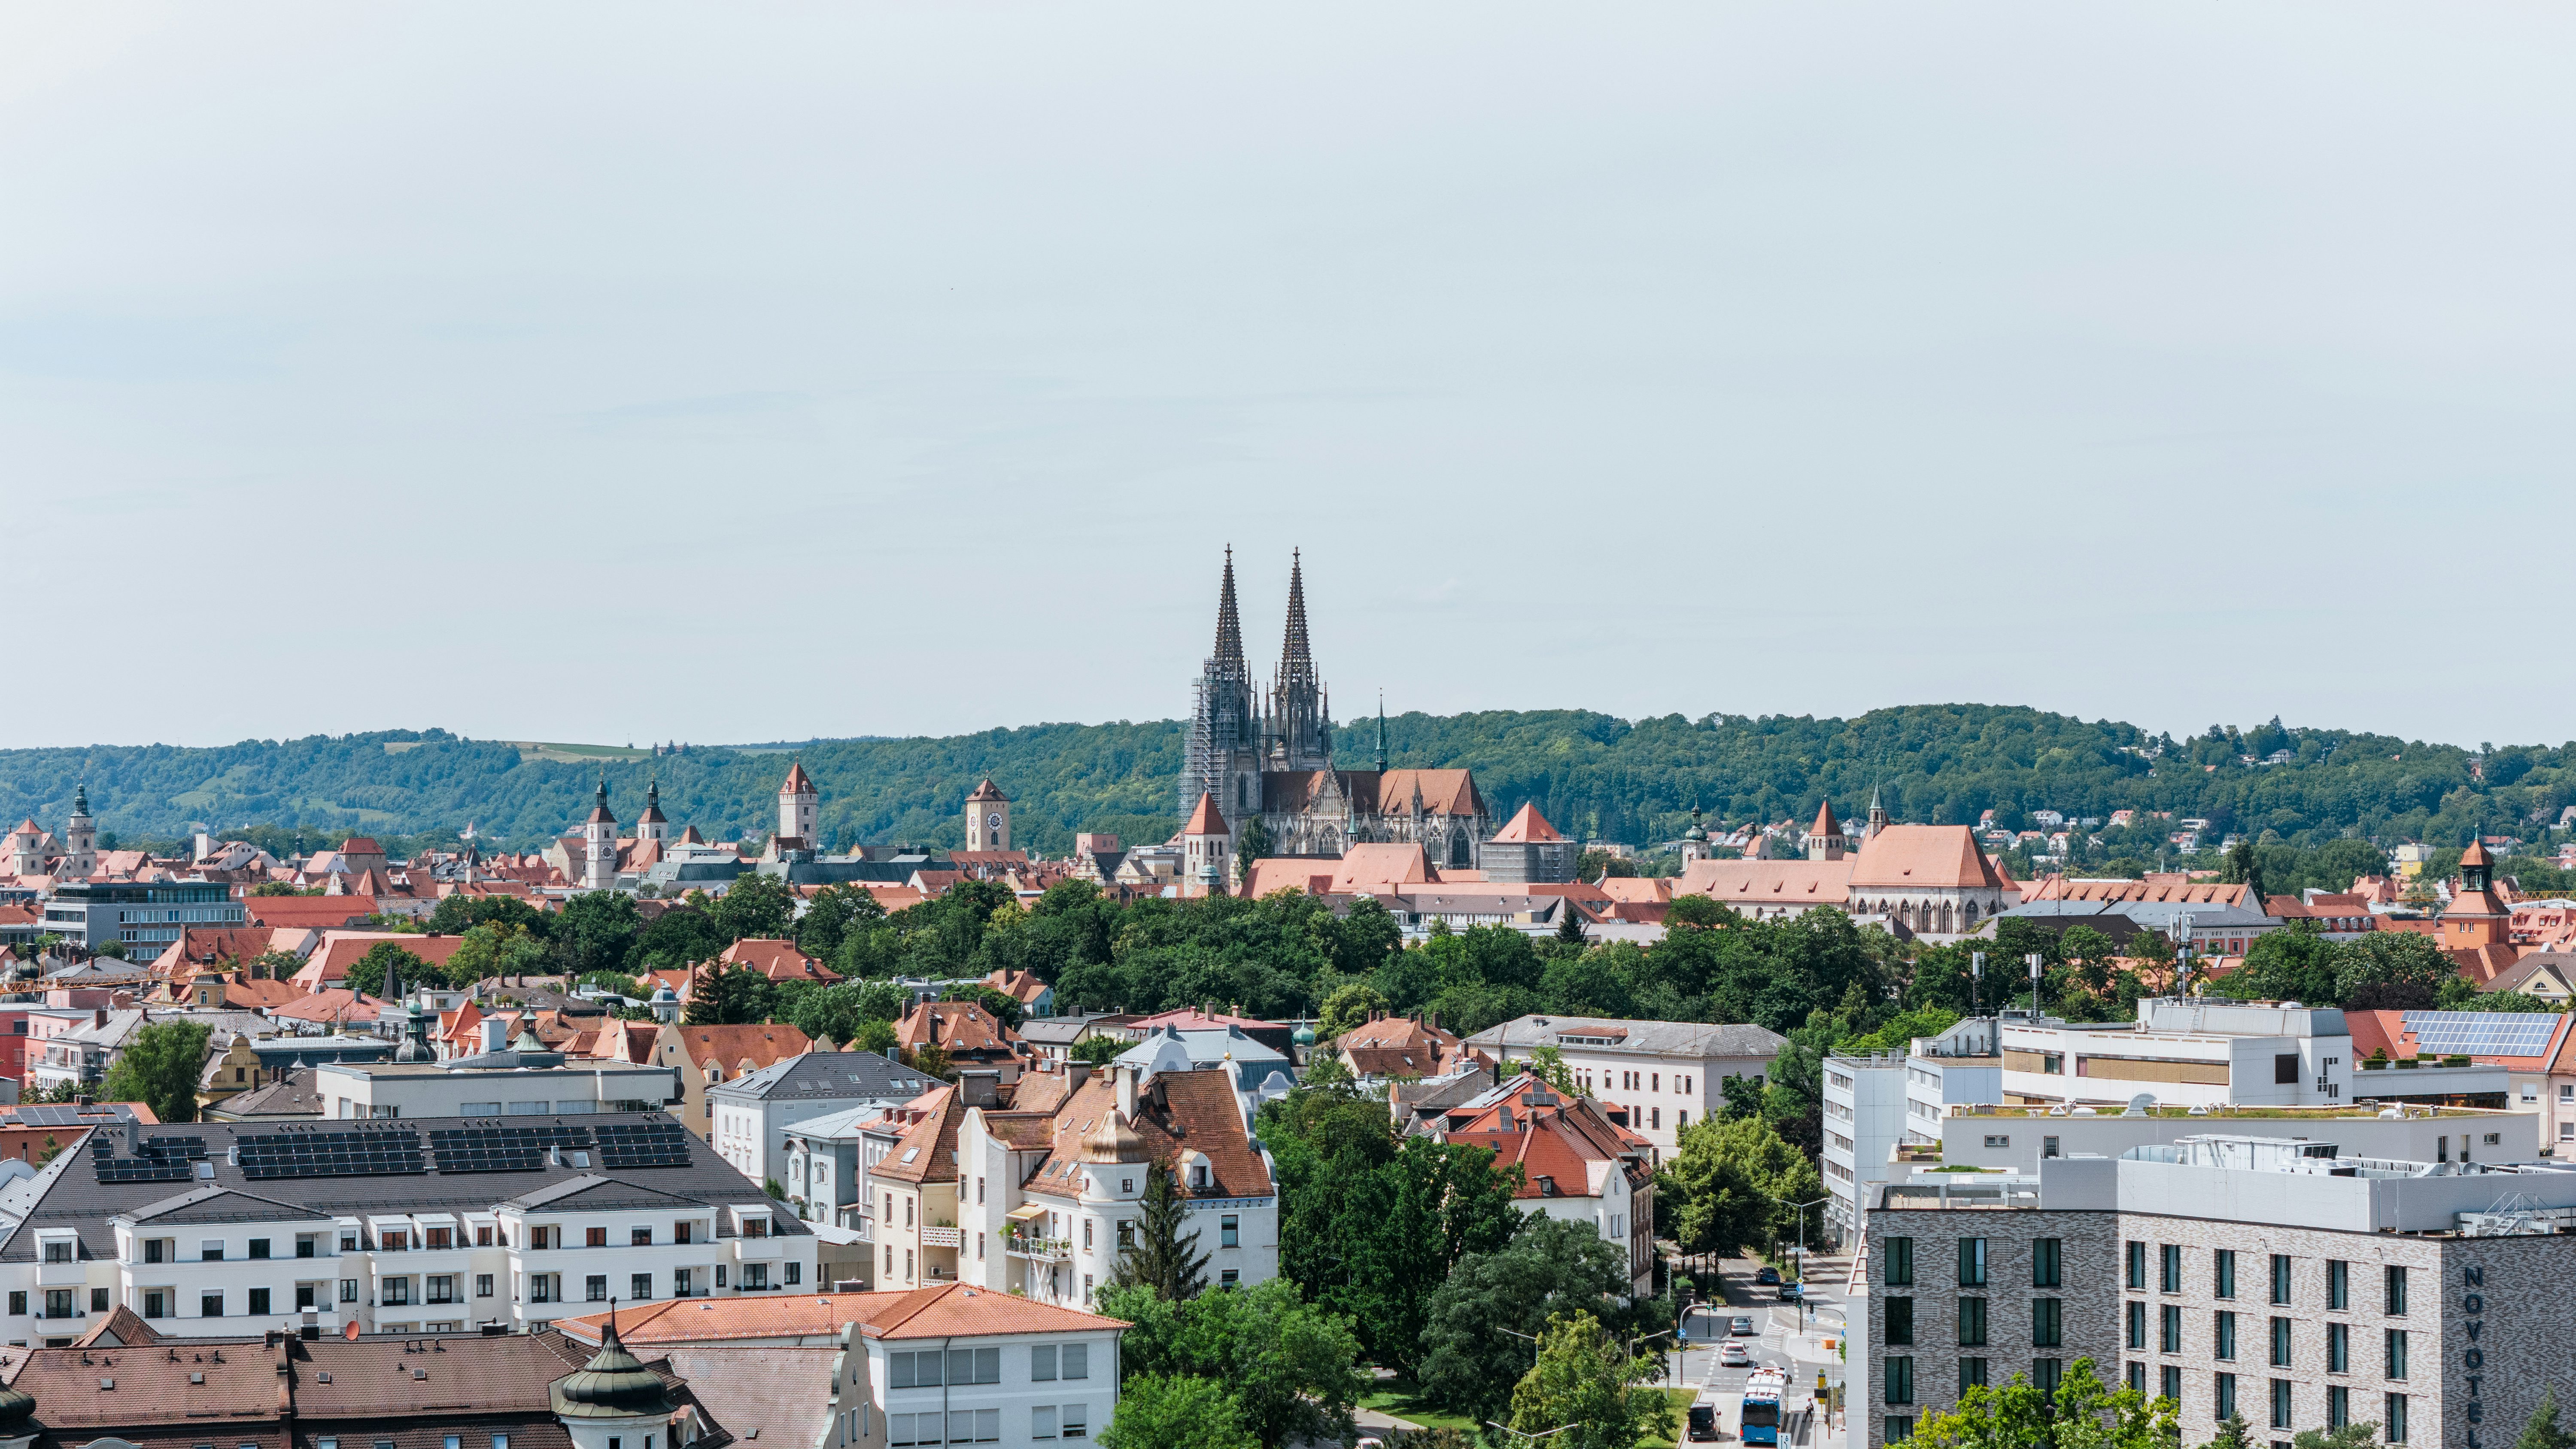 Über den Dächern von Regensburg: Blick auf den Regensburger Dom